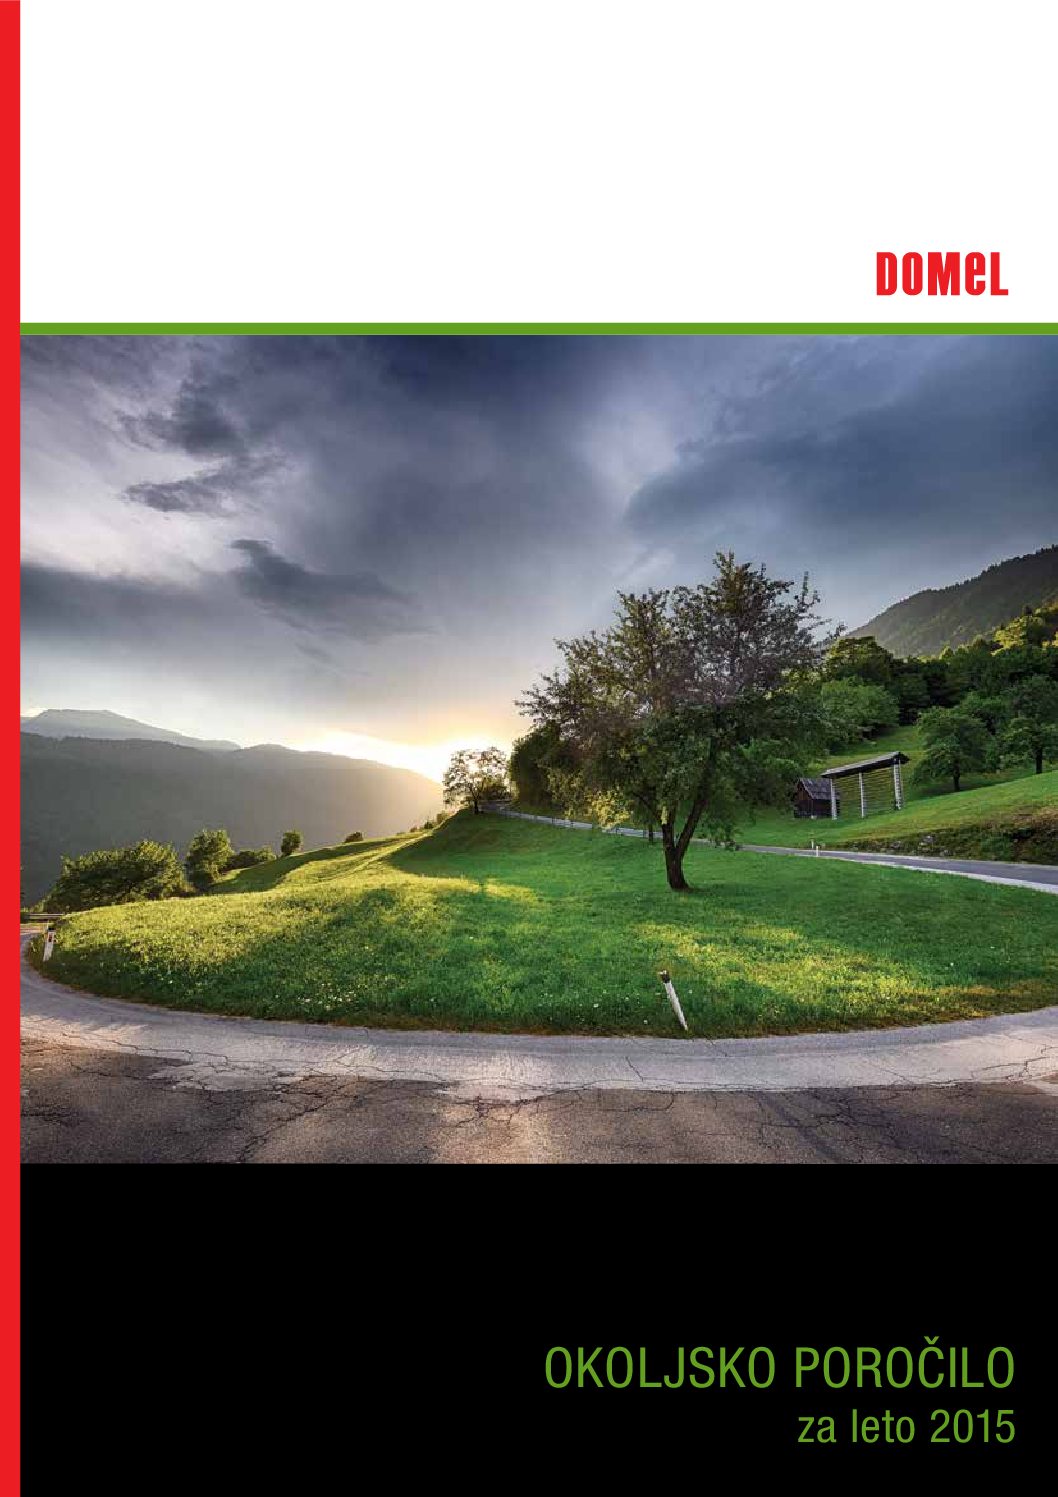 Okoljsko porocilo Domel 2015 pdf